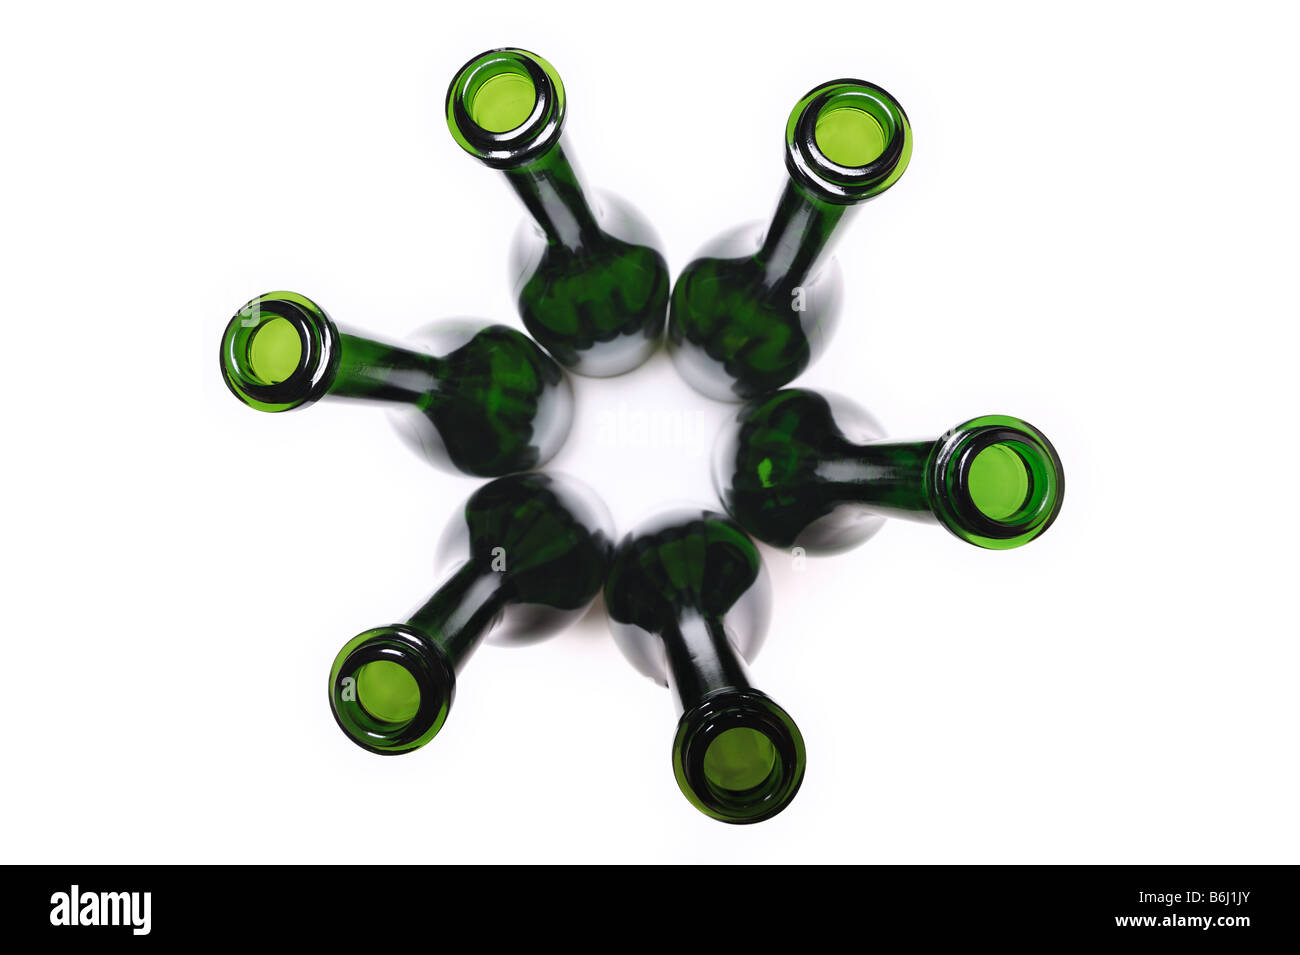 Gruppo di svuotare le bottiglie di vino su uno sfondo bianco Foto Stock